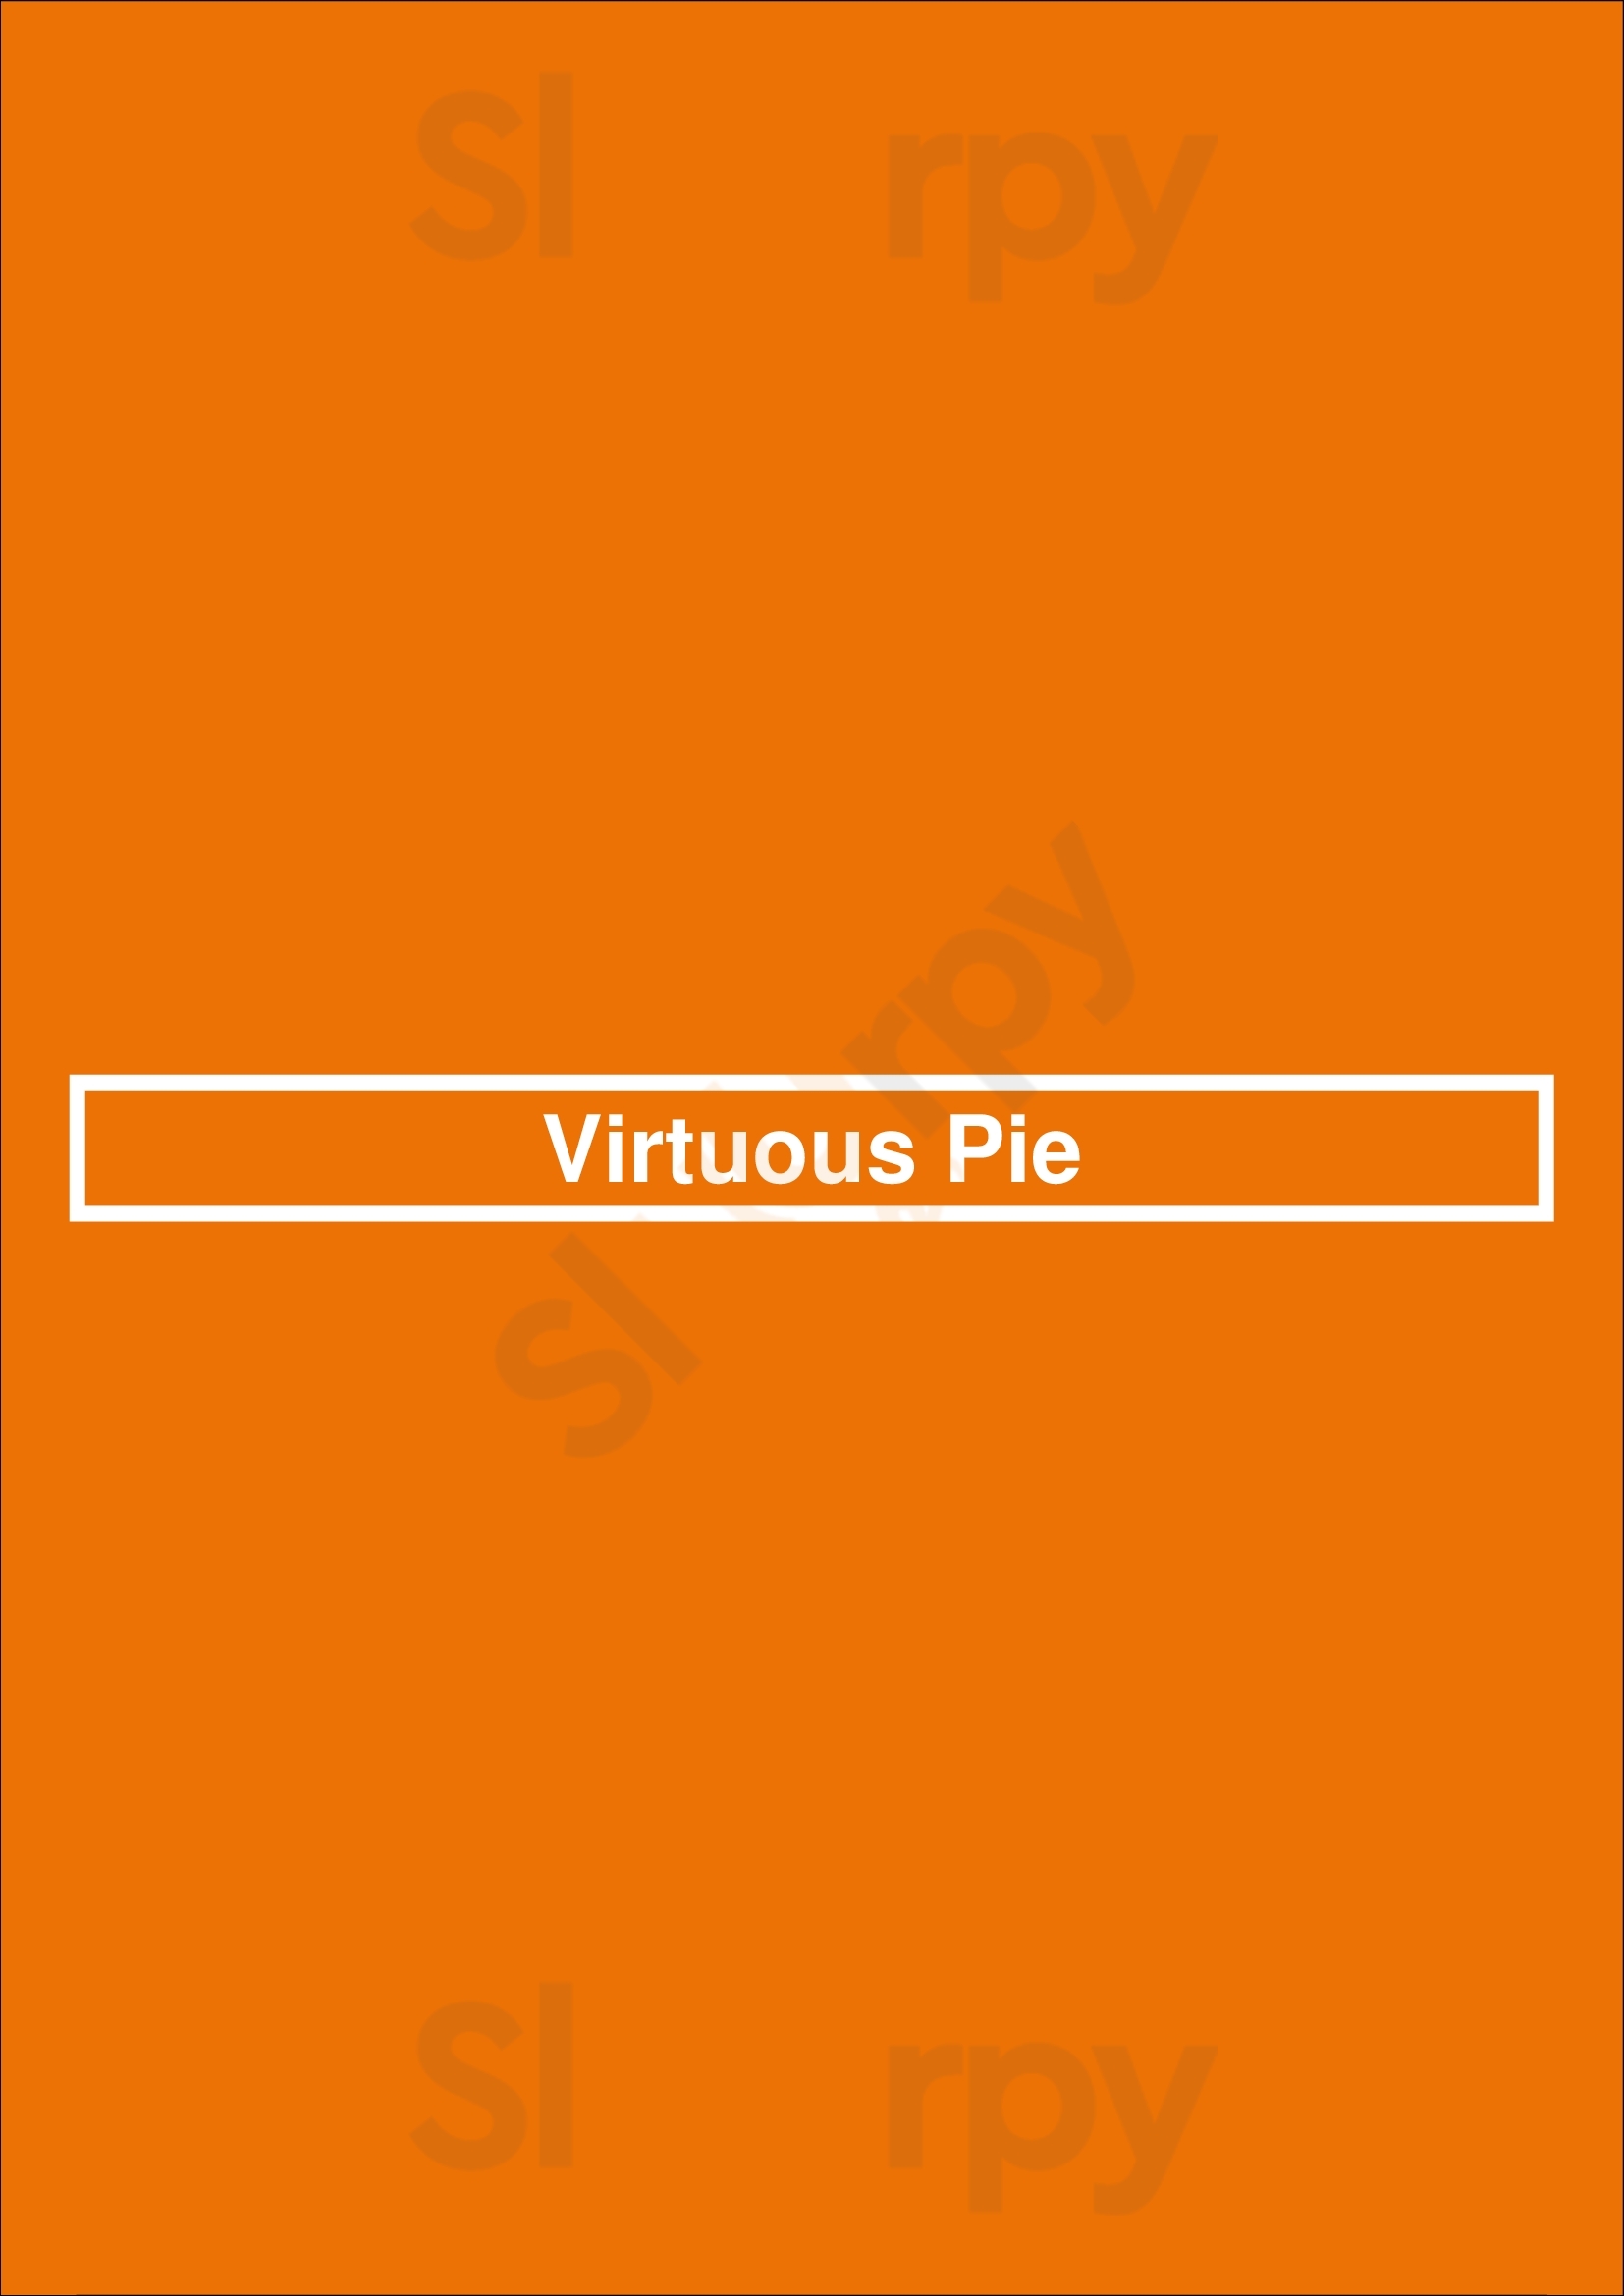 Virtuous Pie Toronto Menu - 1